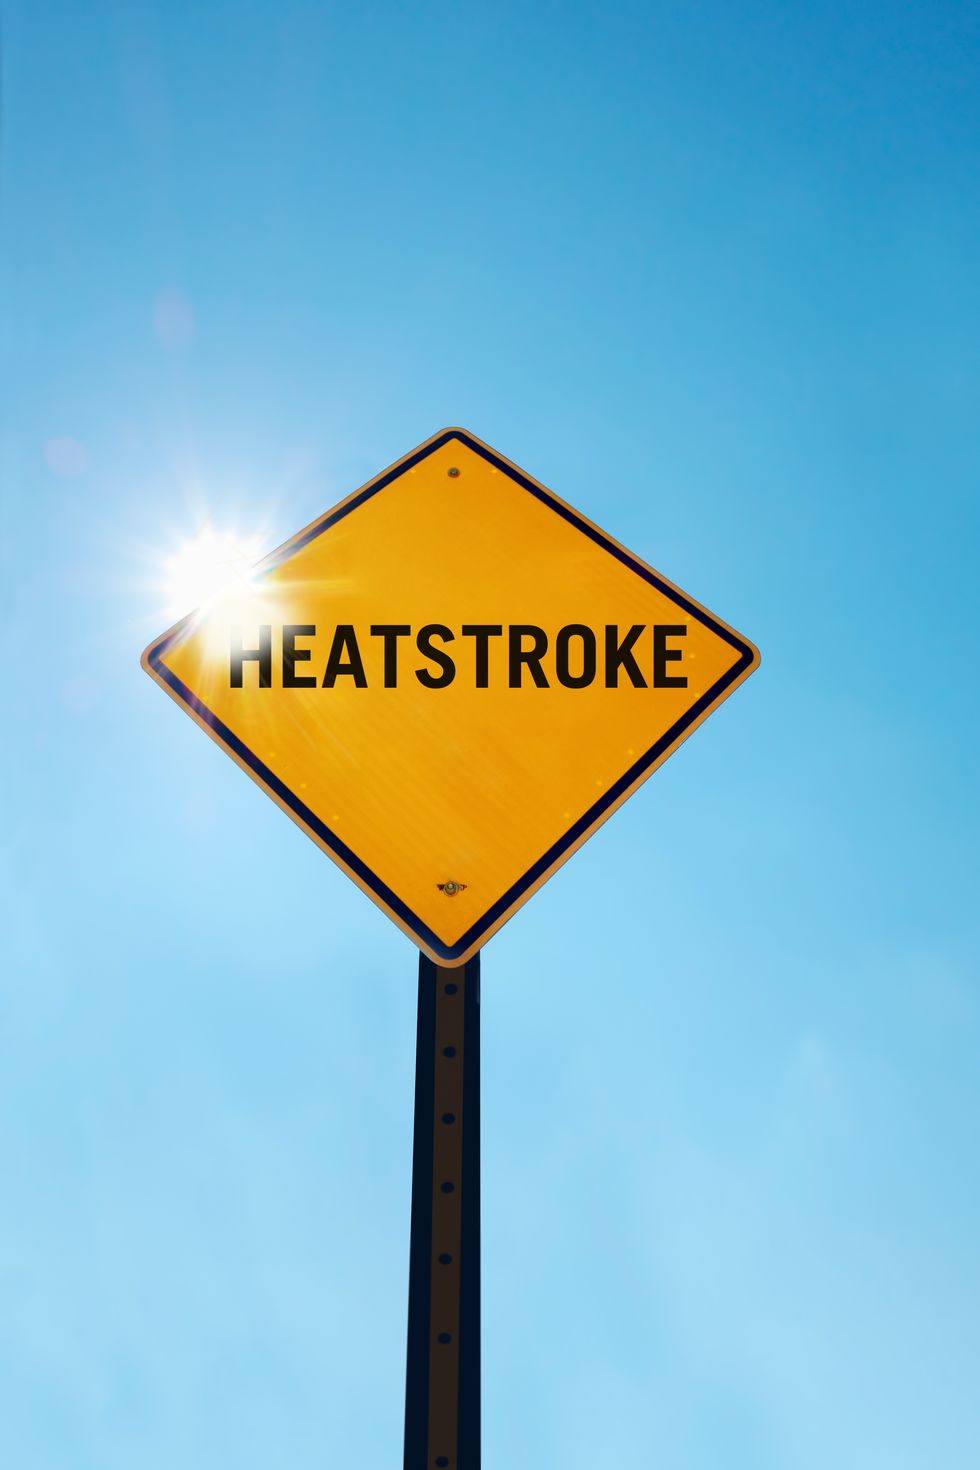 heatstroke warning